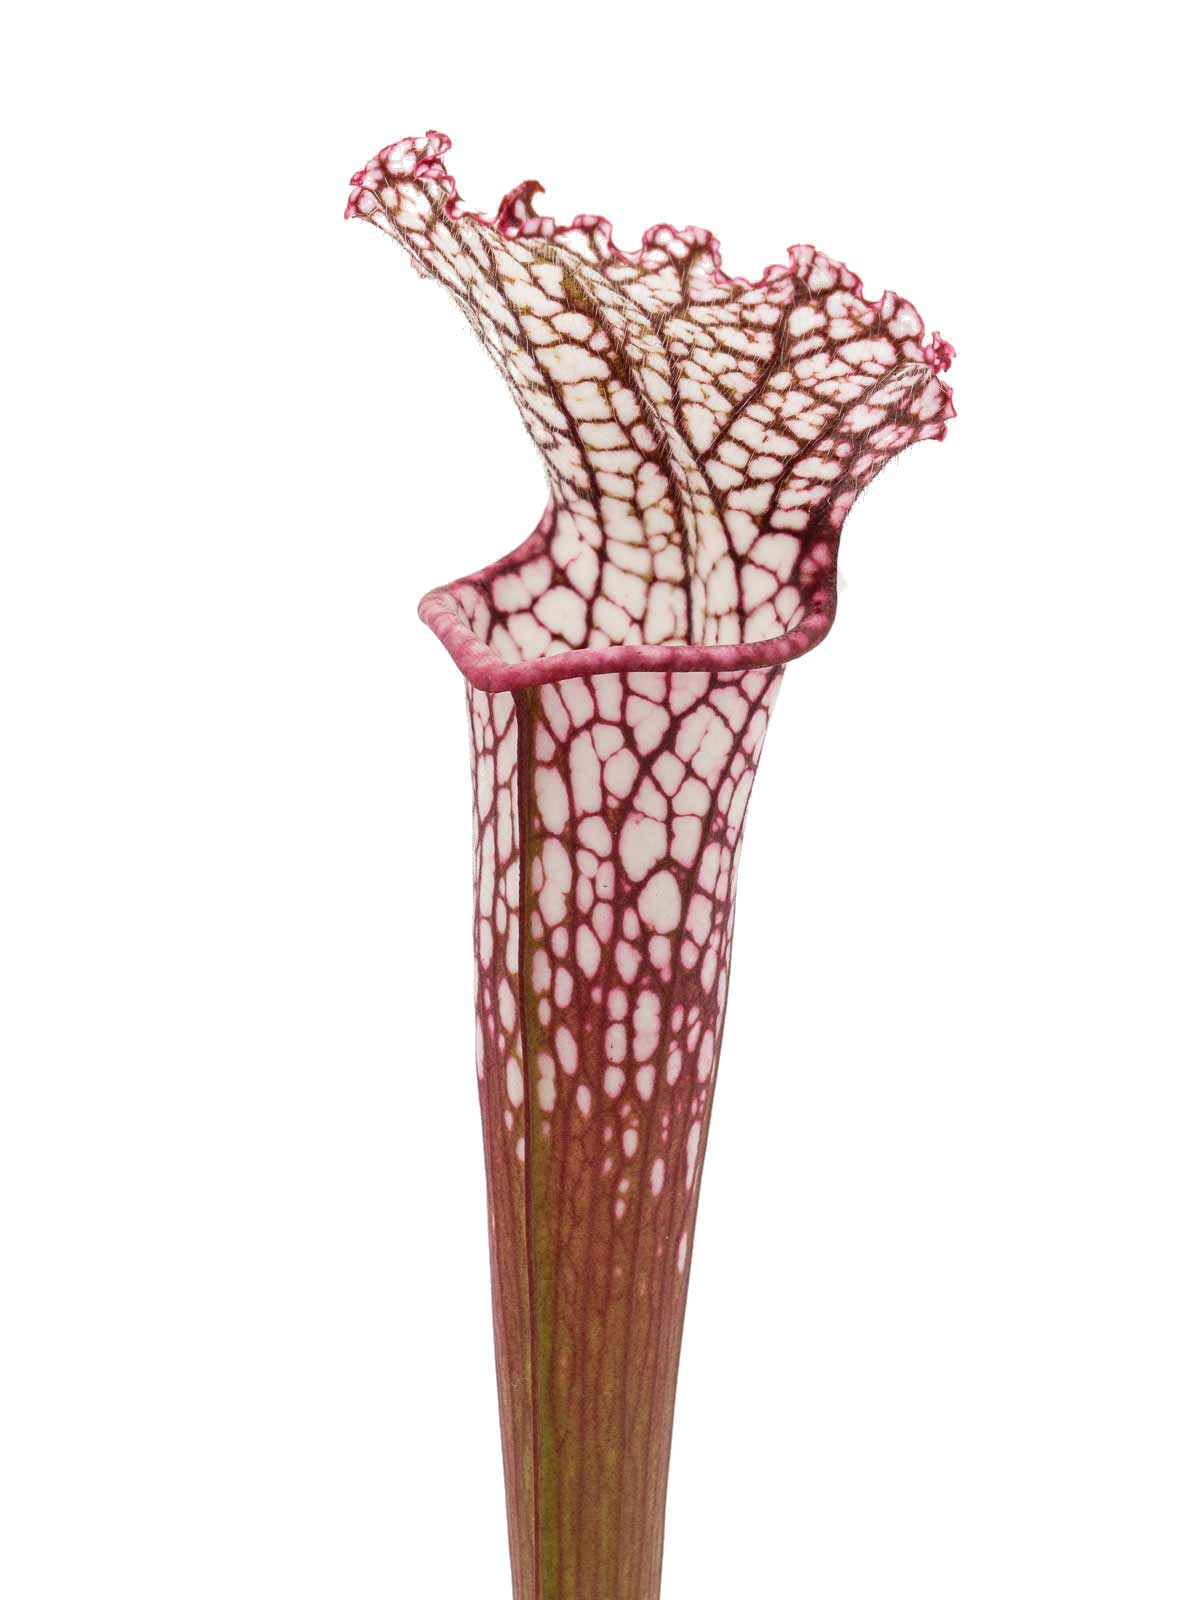 S. leucophylla - 5ee13, red form, Dr. Eberhard König